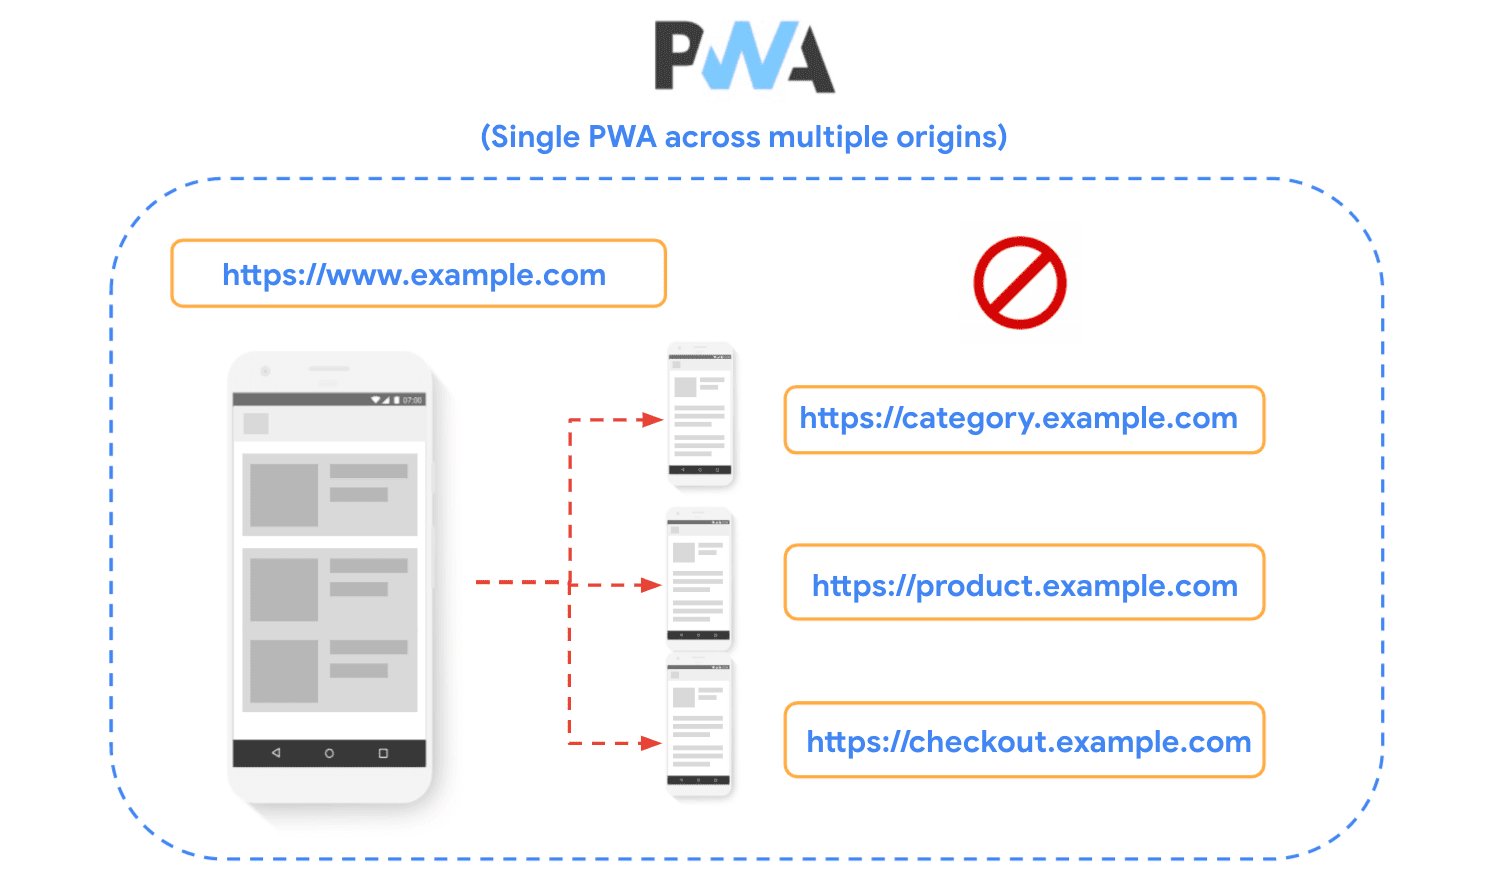 डायग्राम में किसी साइट को कई ऑरिजिन में बांटा गया है. साथ ही, यह दिखाया गया है कि PWA बनाते समय किसी साइट का इस्तेमाल नहीं किया जाता.